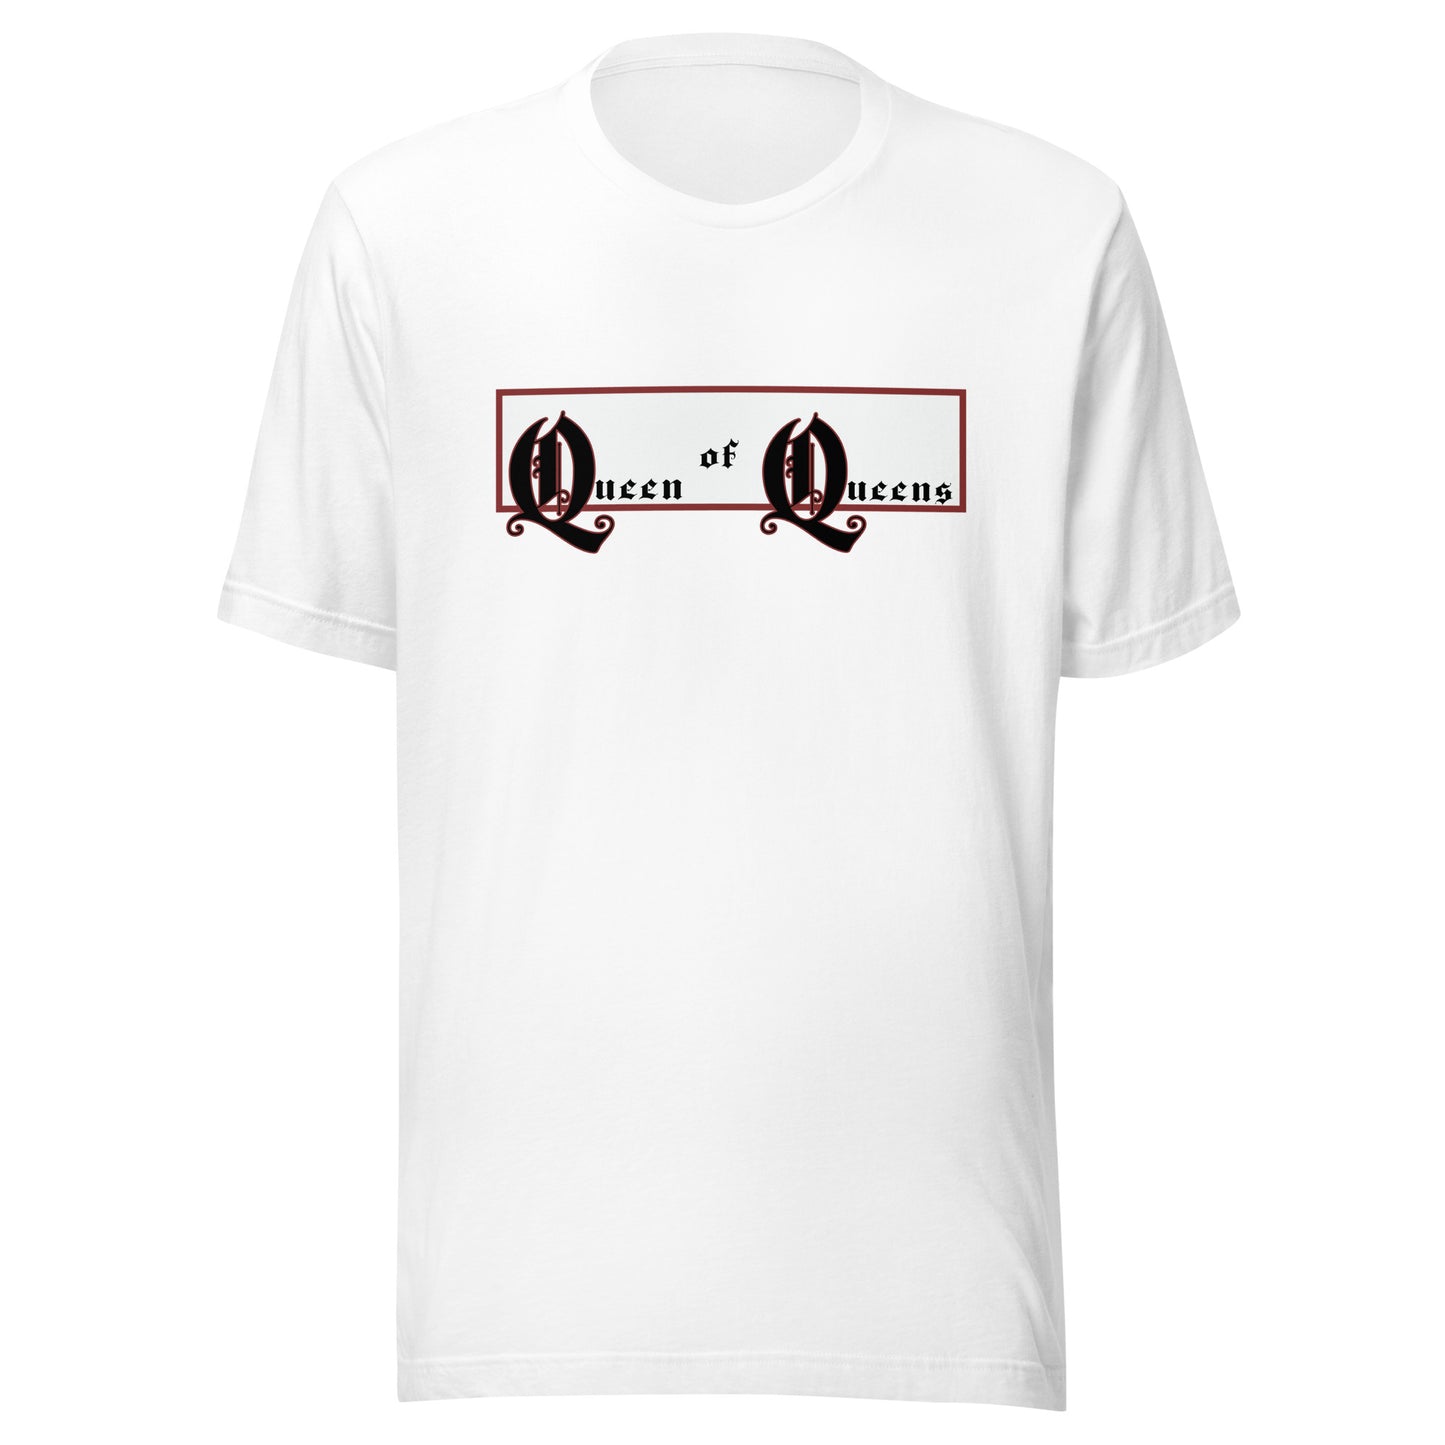 Queen of Queens t-shirt